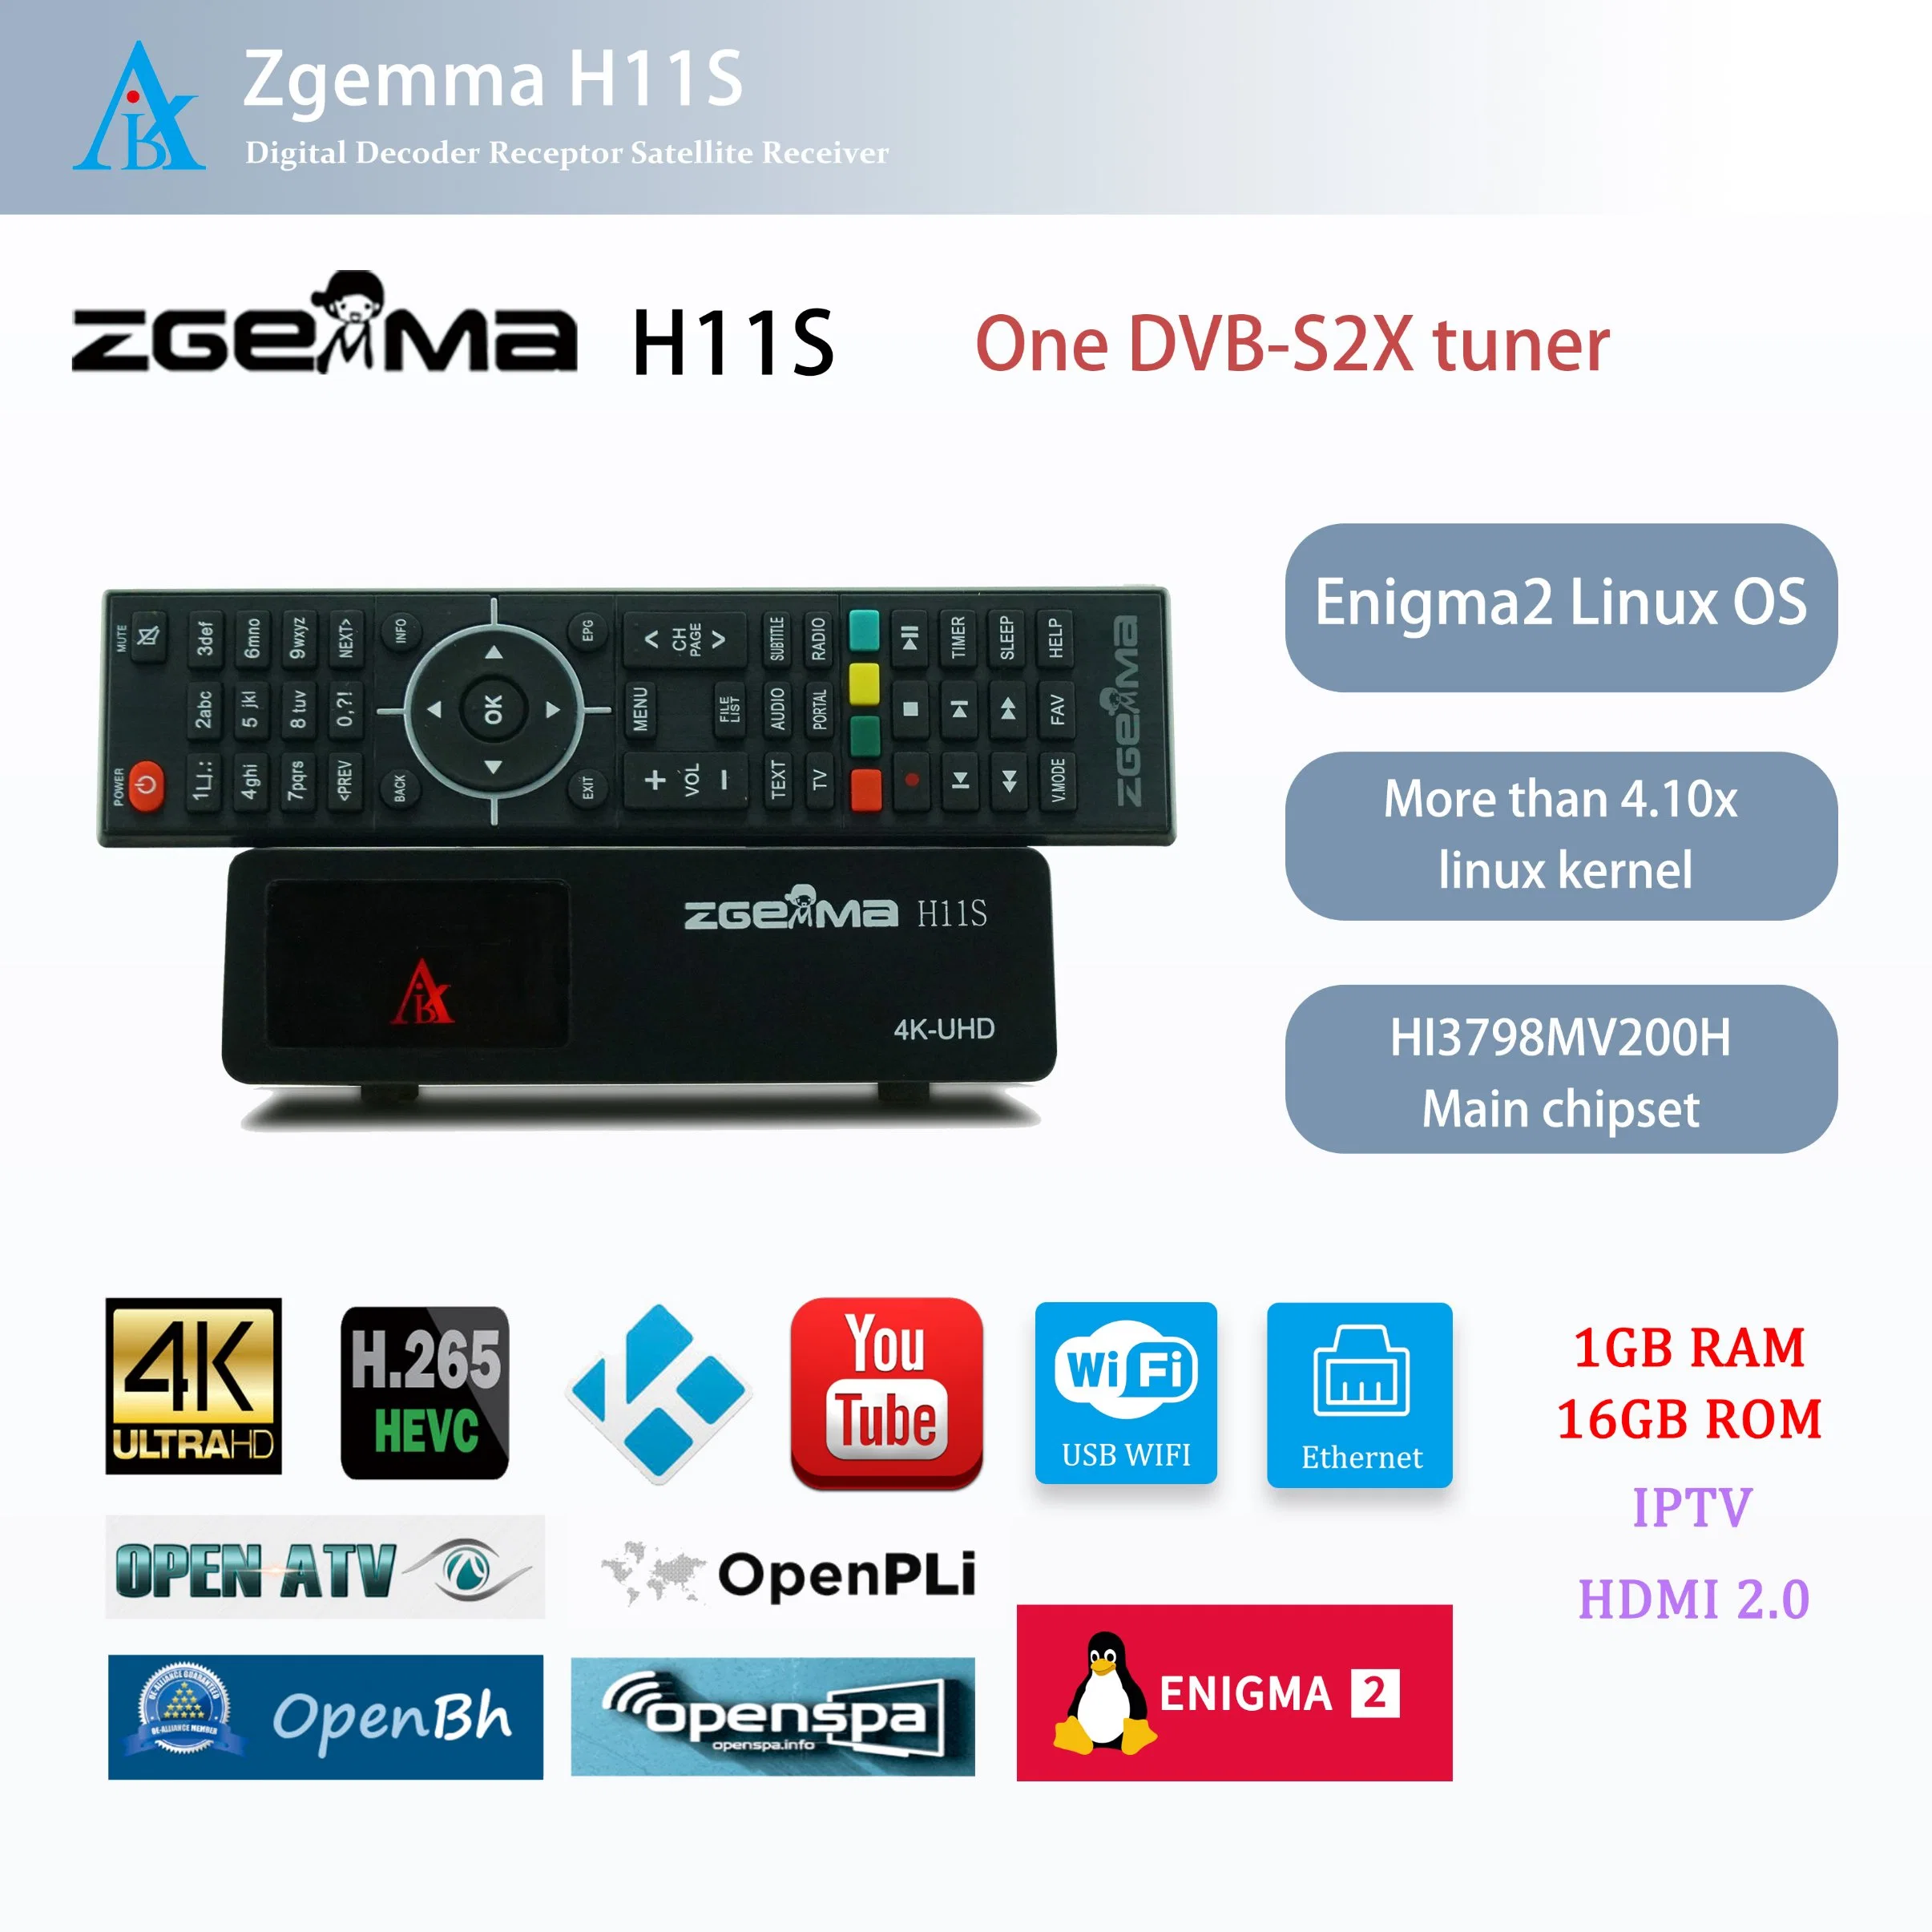 Передовые спутниковые приемники Zgemma H11s - Enigma2 Linux OS, один тюнер DVB-S2X, ТВ декодер